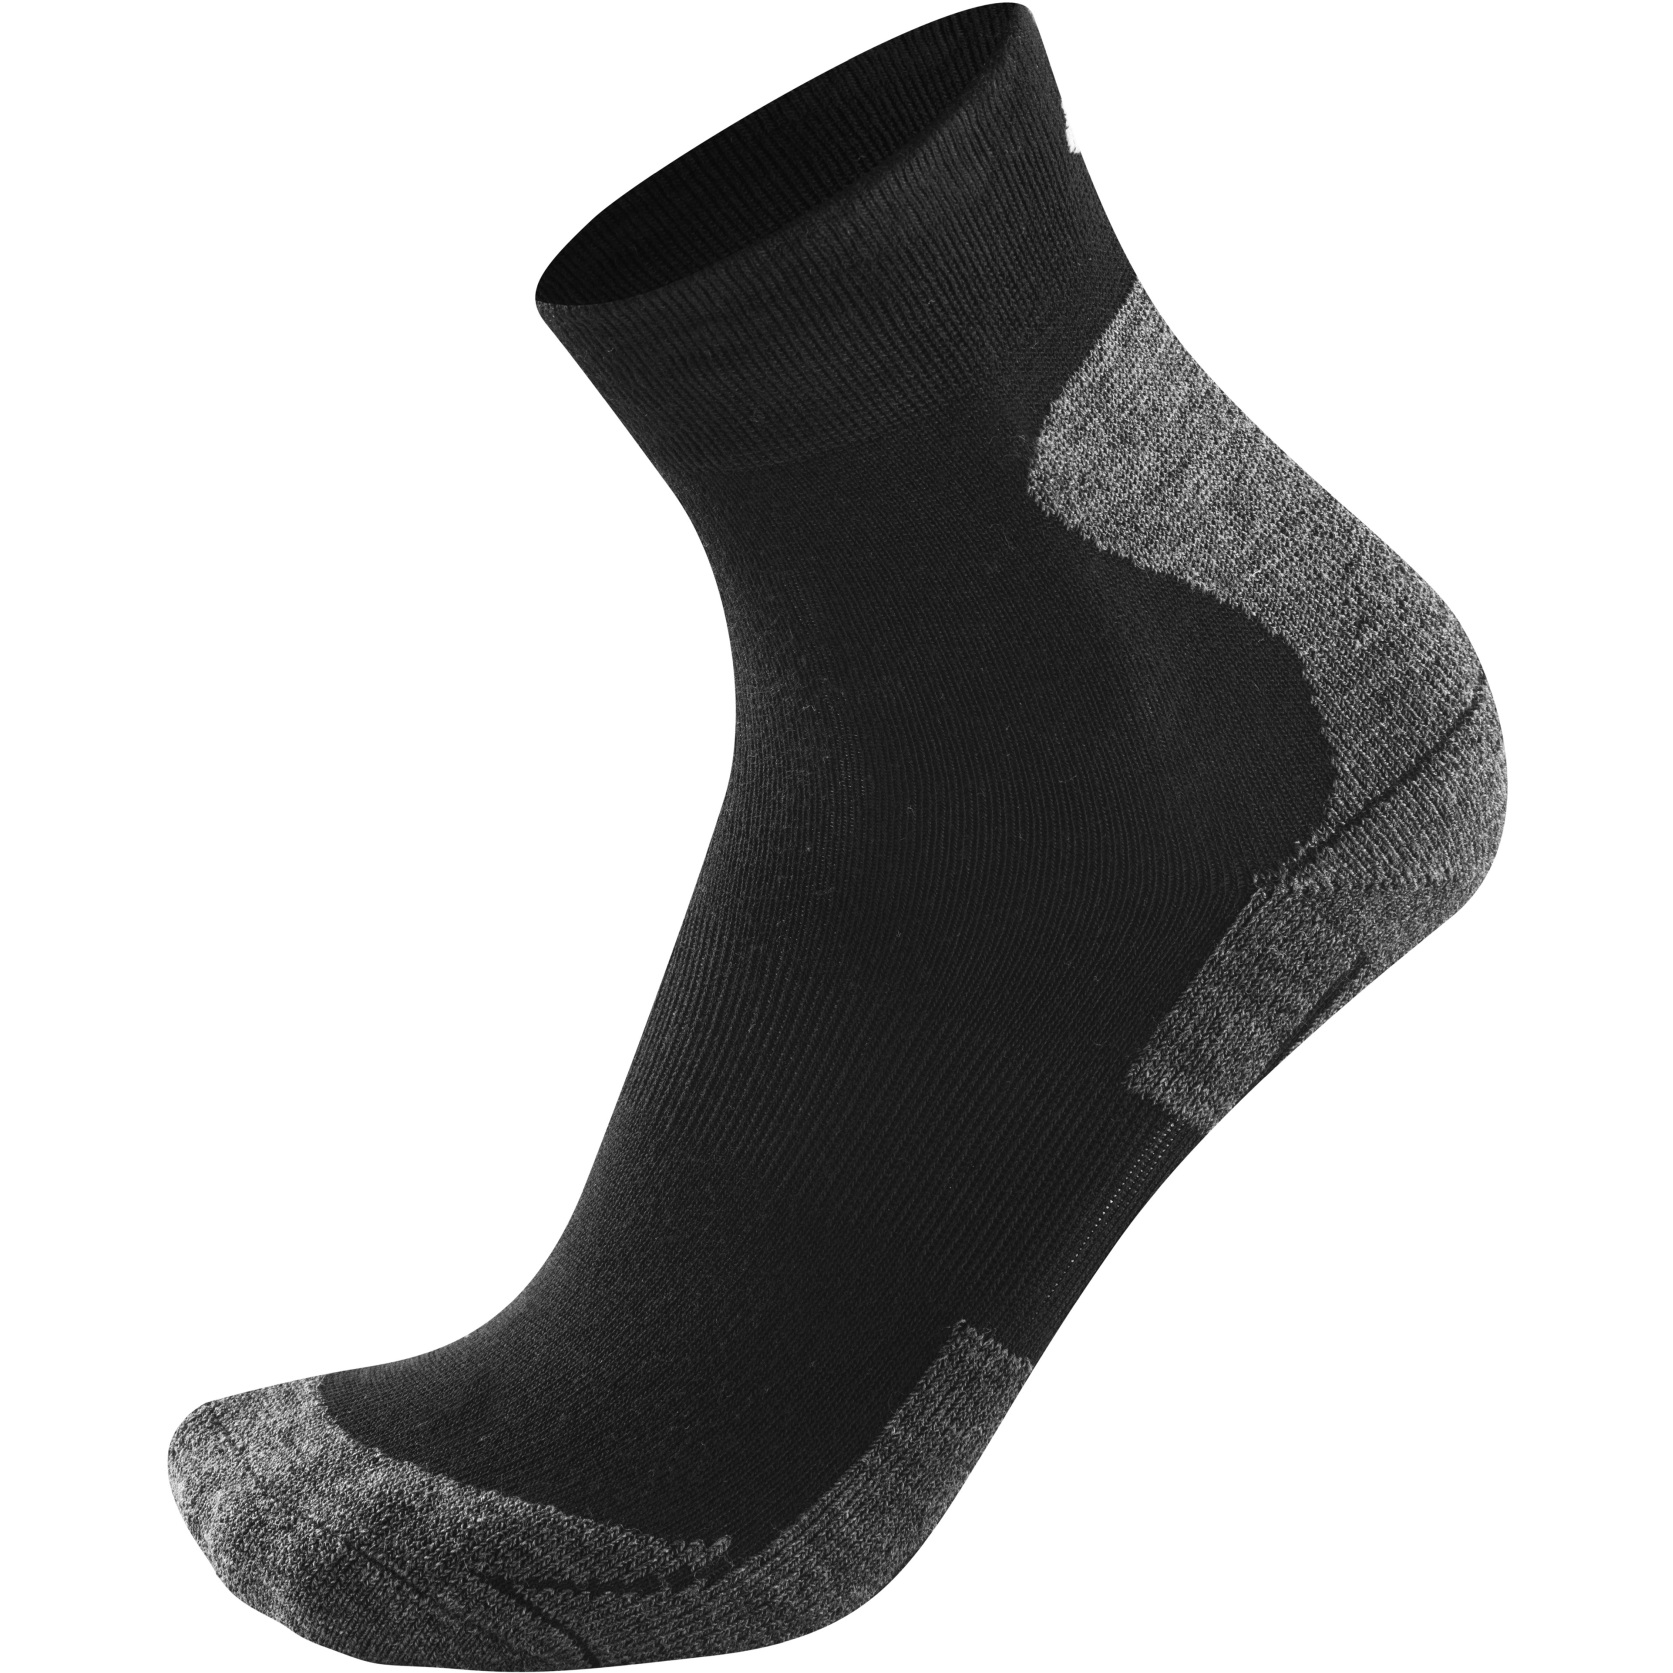 Produktbild von Löffler Merino Trekking Socken - schwarz 990